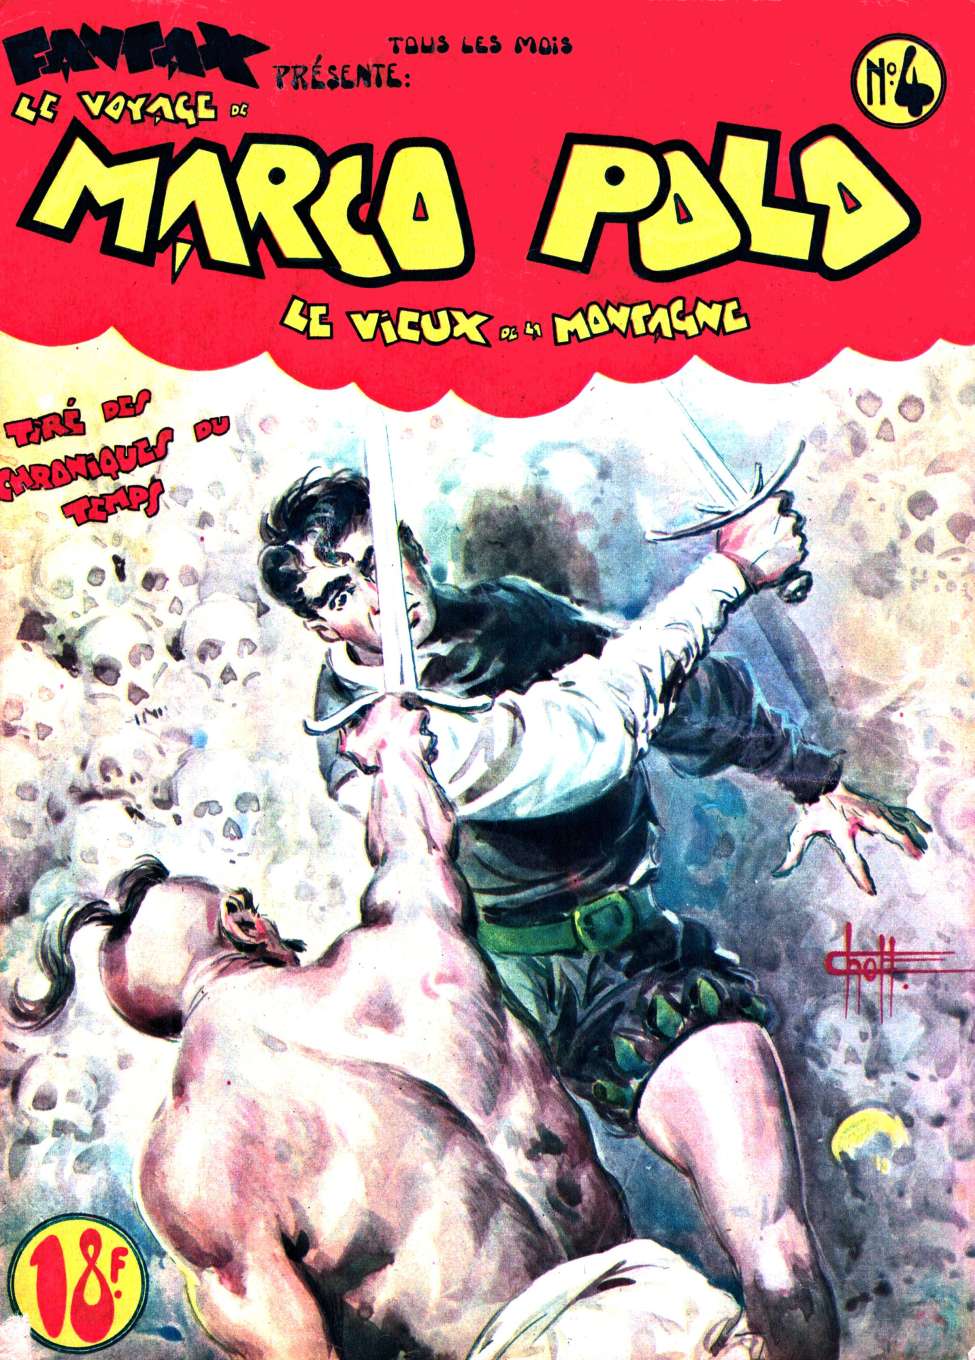 Book Cover For Marco Polo 4 - Vieux de la Montagne